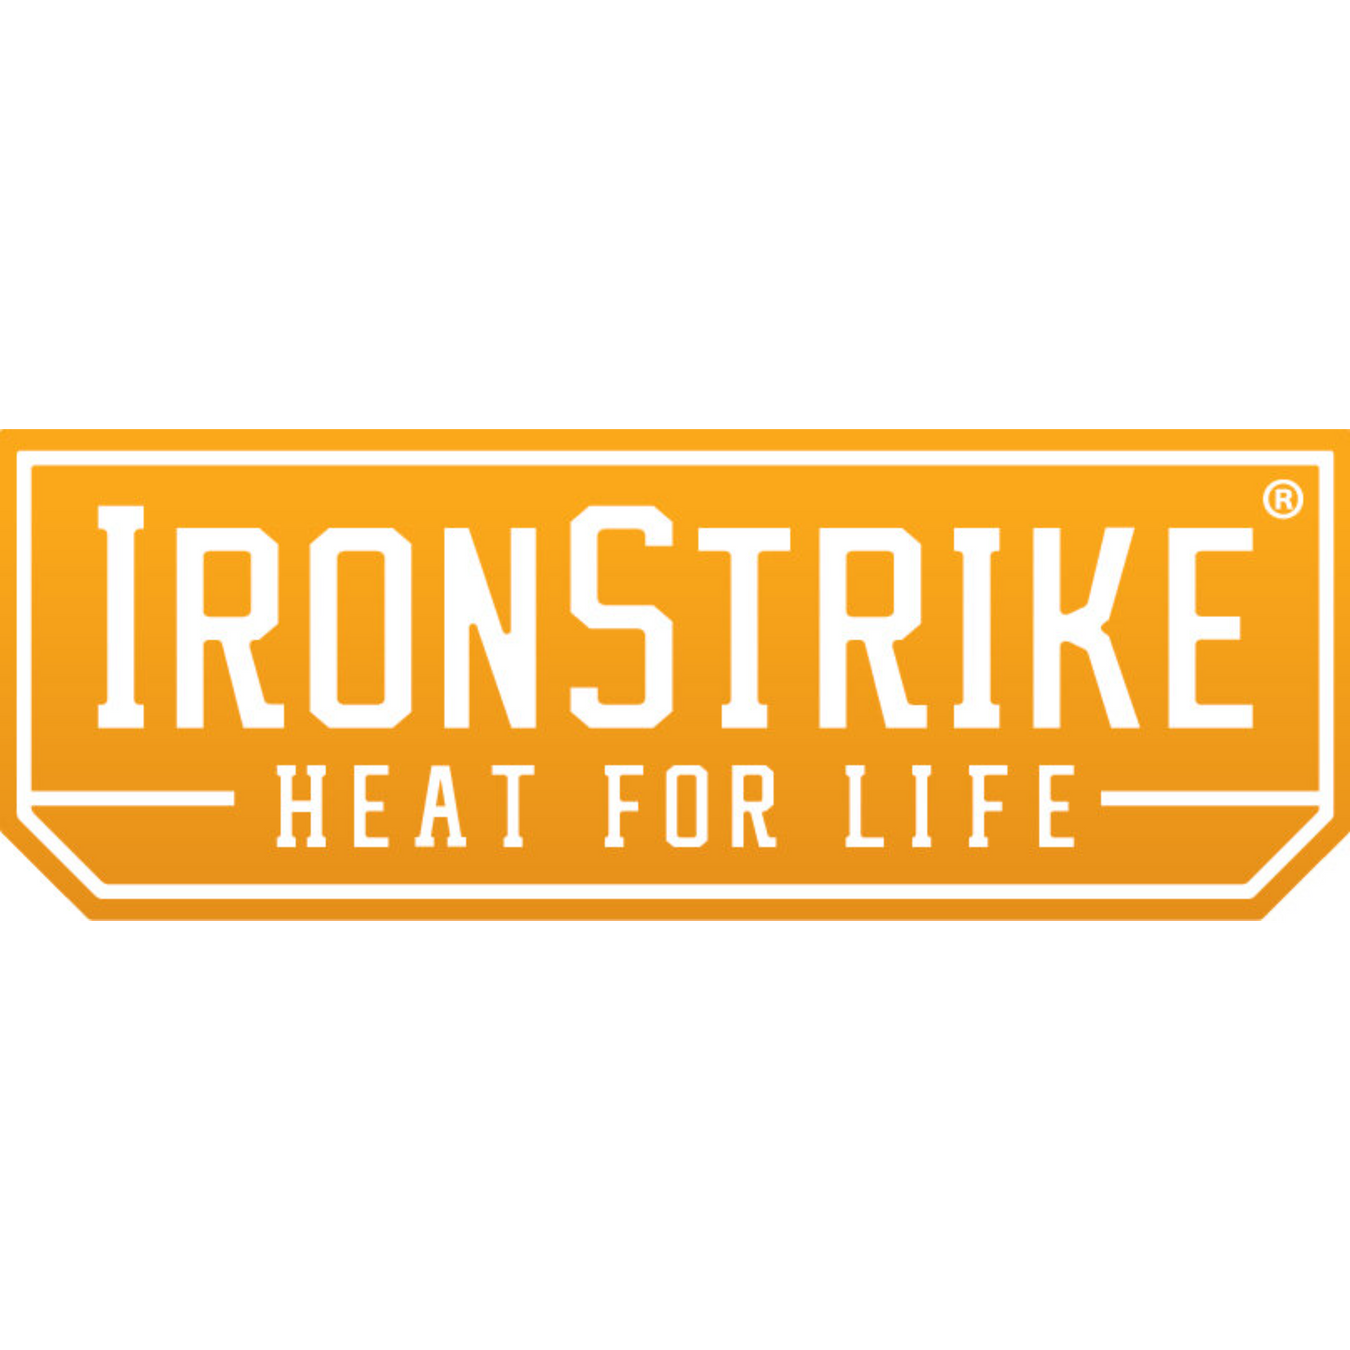 Iron Strike